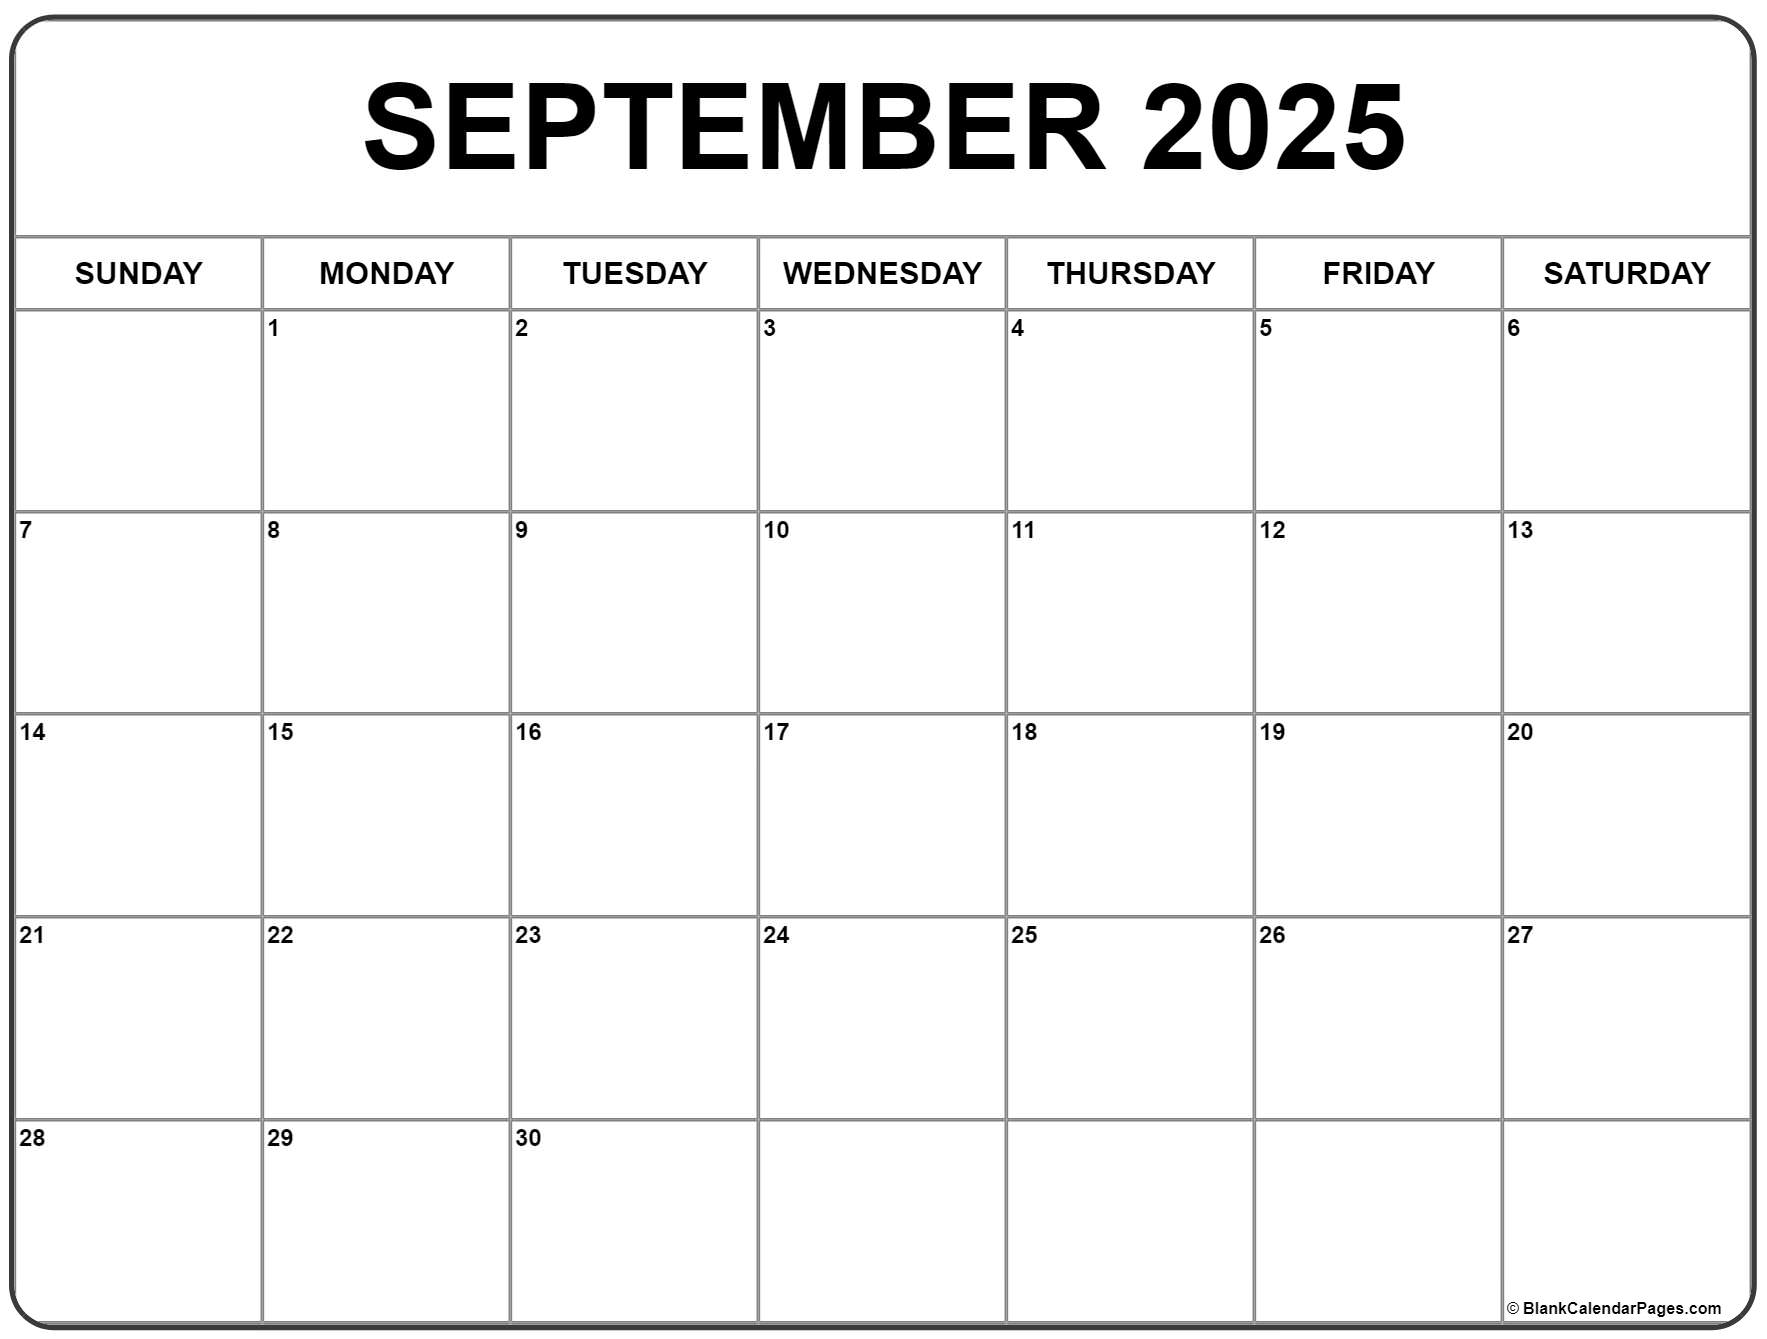 September 2025 Calendar Template Word 